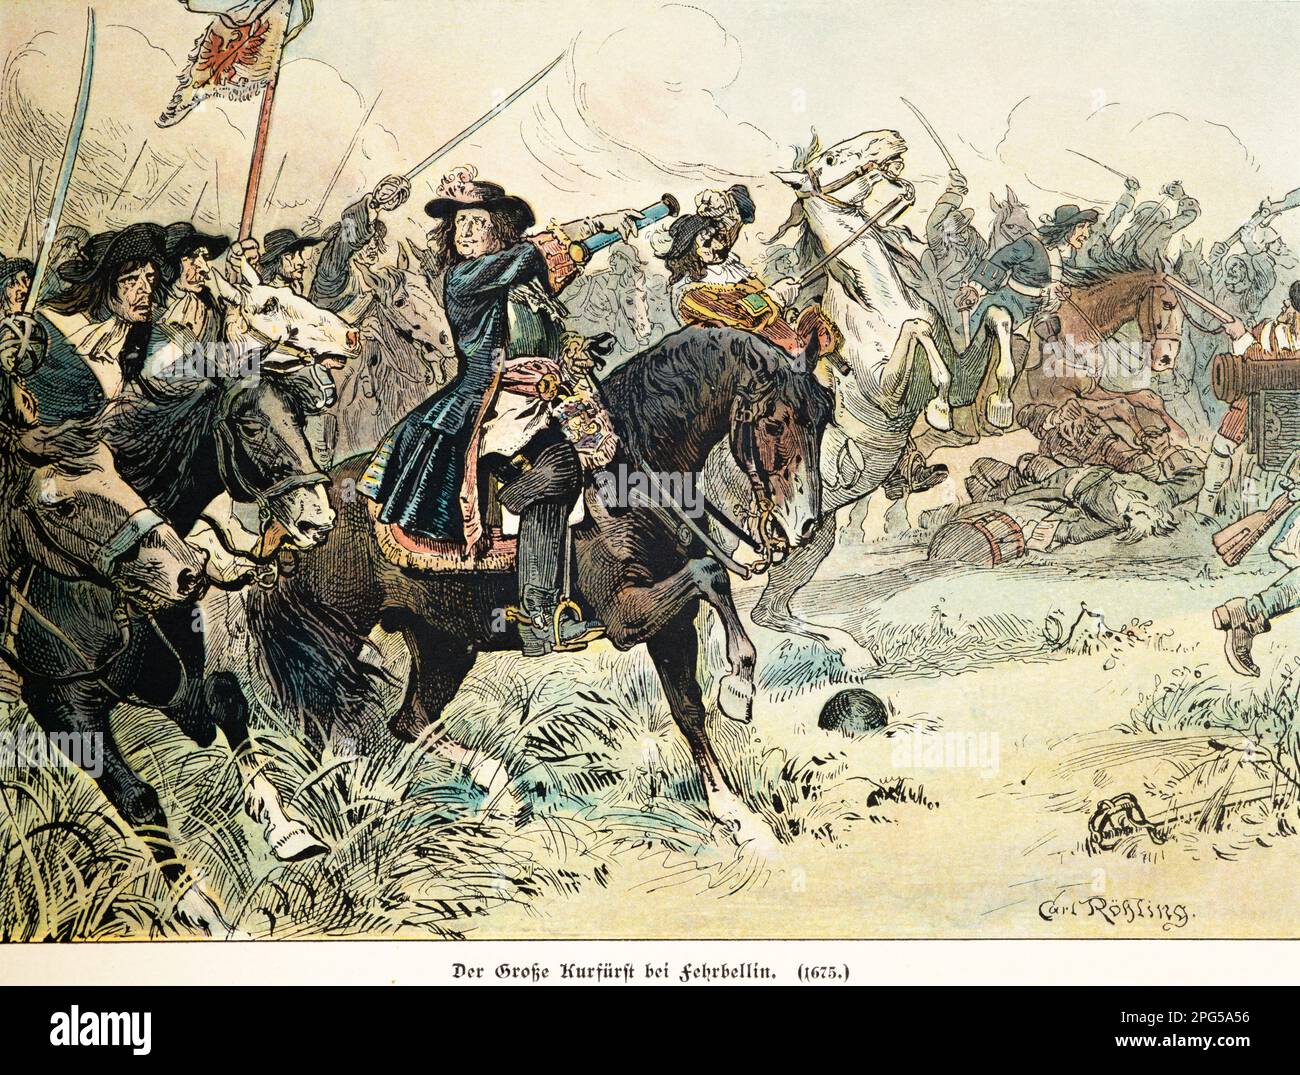 Il Grande Elettore guidò il suo esercito a combattere a Fehrbellin nel 1675, storia degli Hohenzollern, Prussia, illustrazione storica 1899 Foto Stock